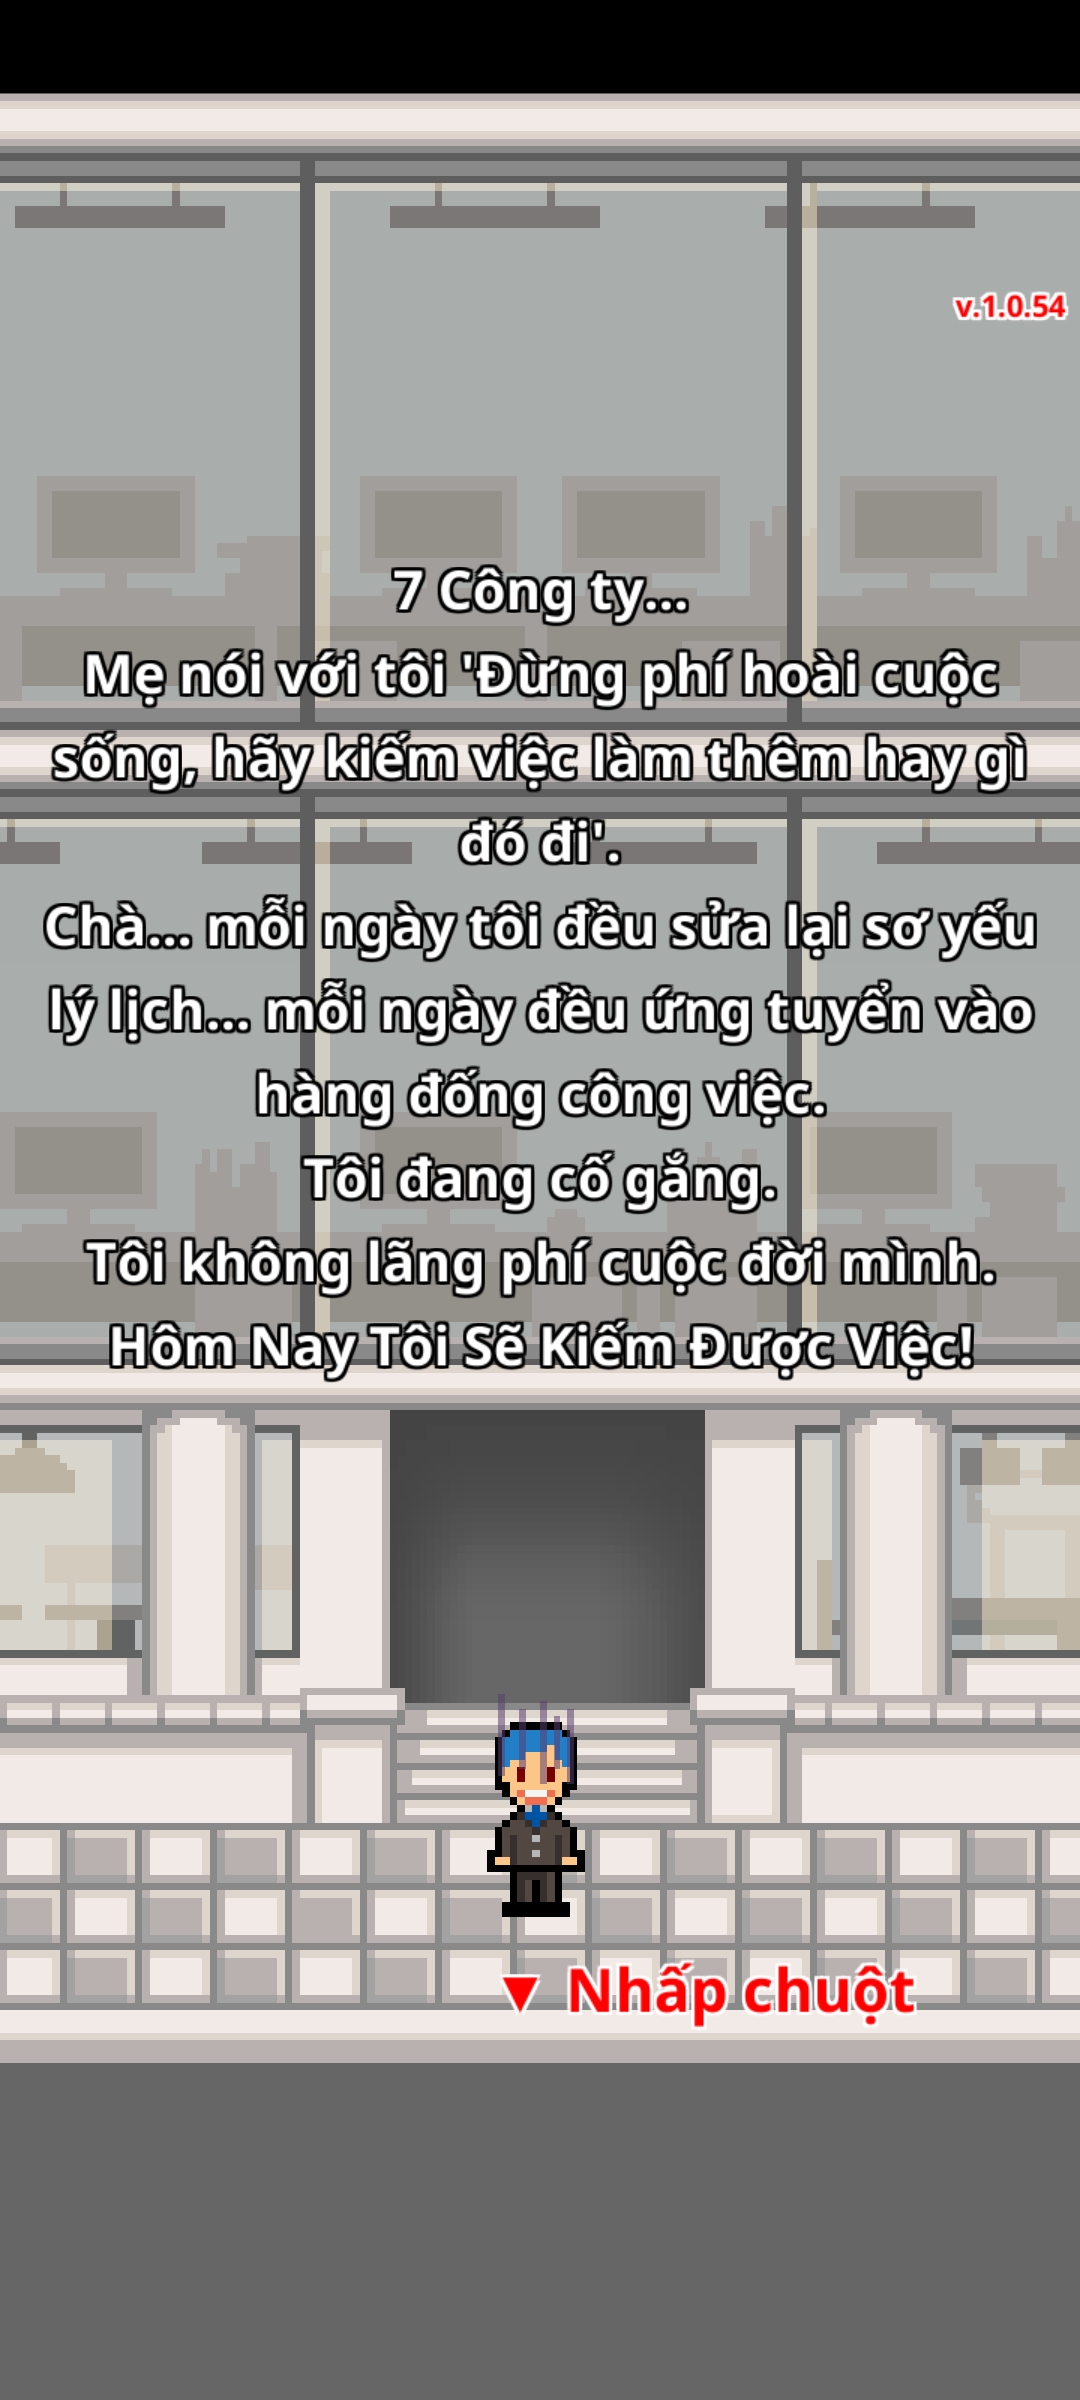 [Game Android] Ai rồi cũng bị đuổi! Tiếng Việt